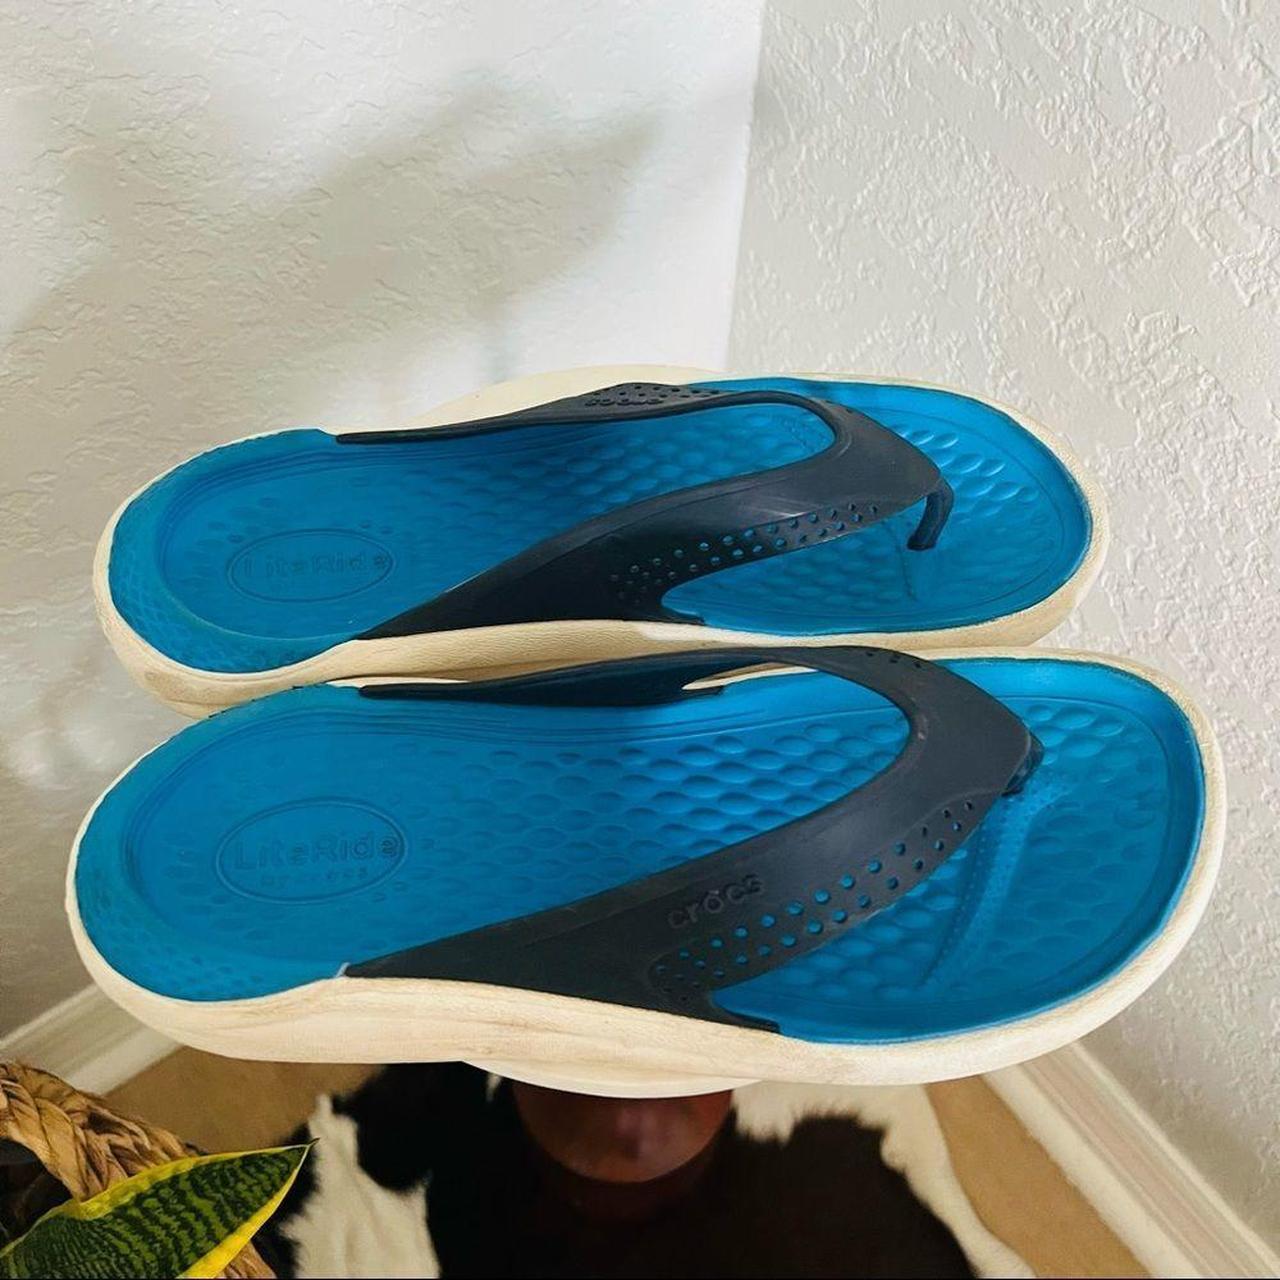 Product Image 4 - Crocs Men’s Flip Flops
Size: 9
Color: